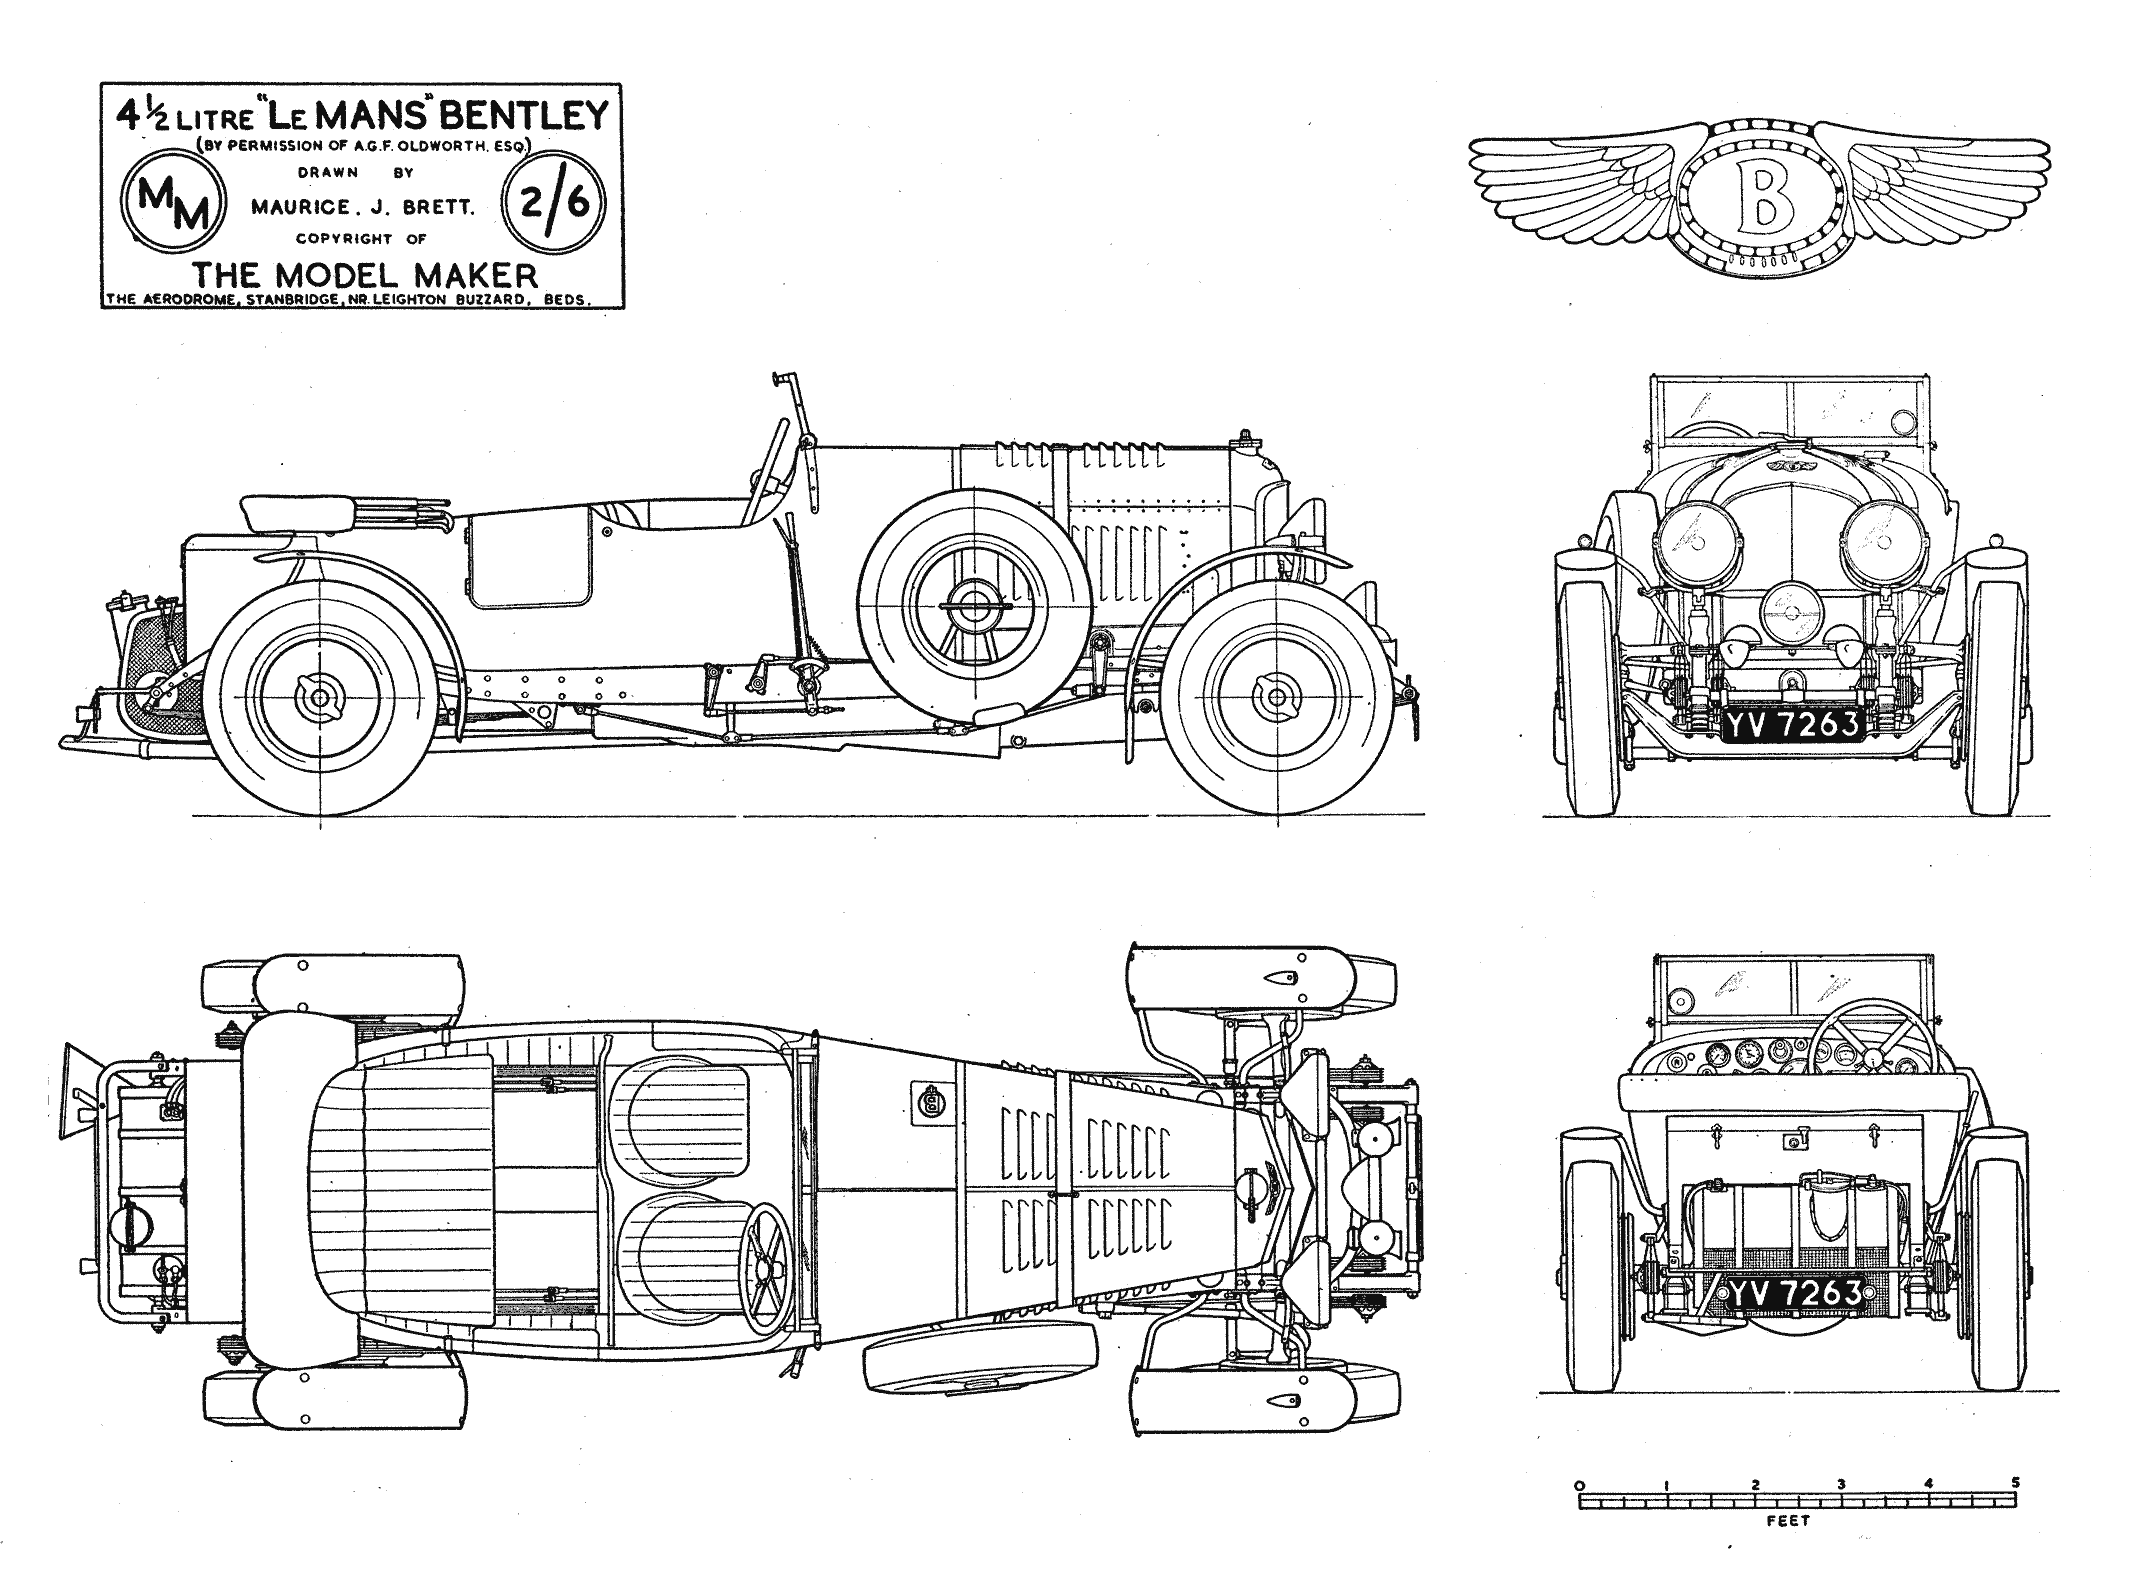 Bentley 4½ Litre blueprint